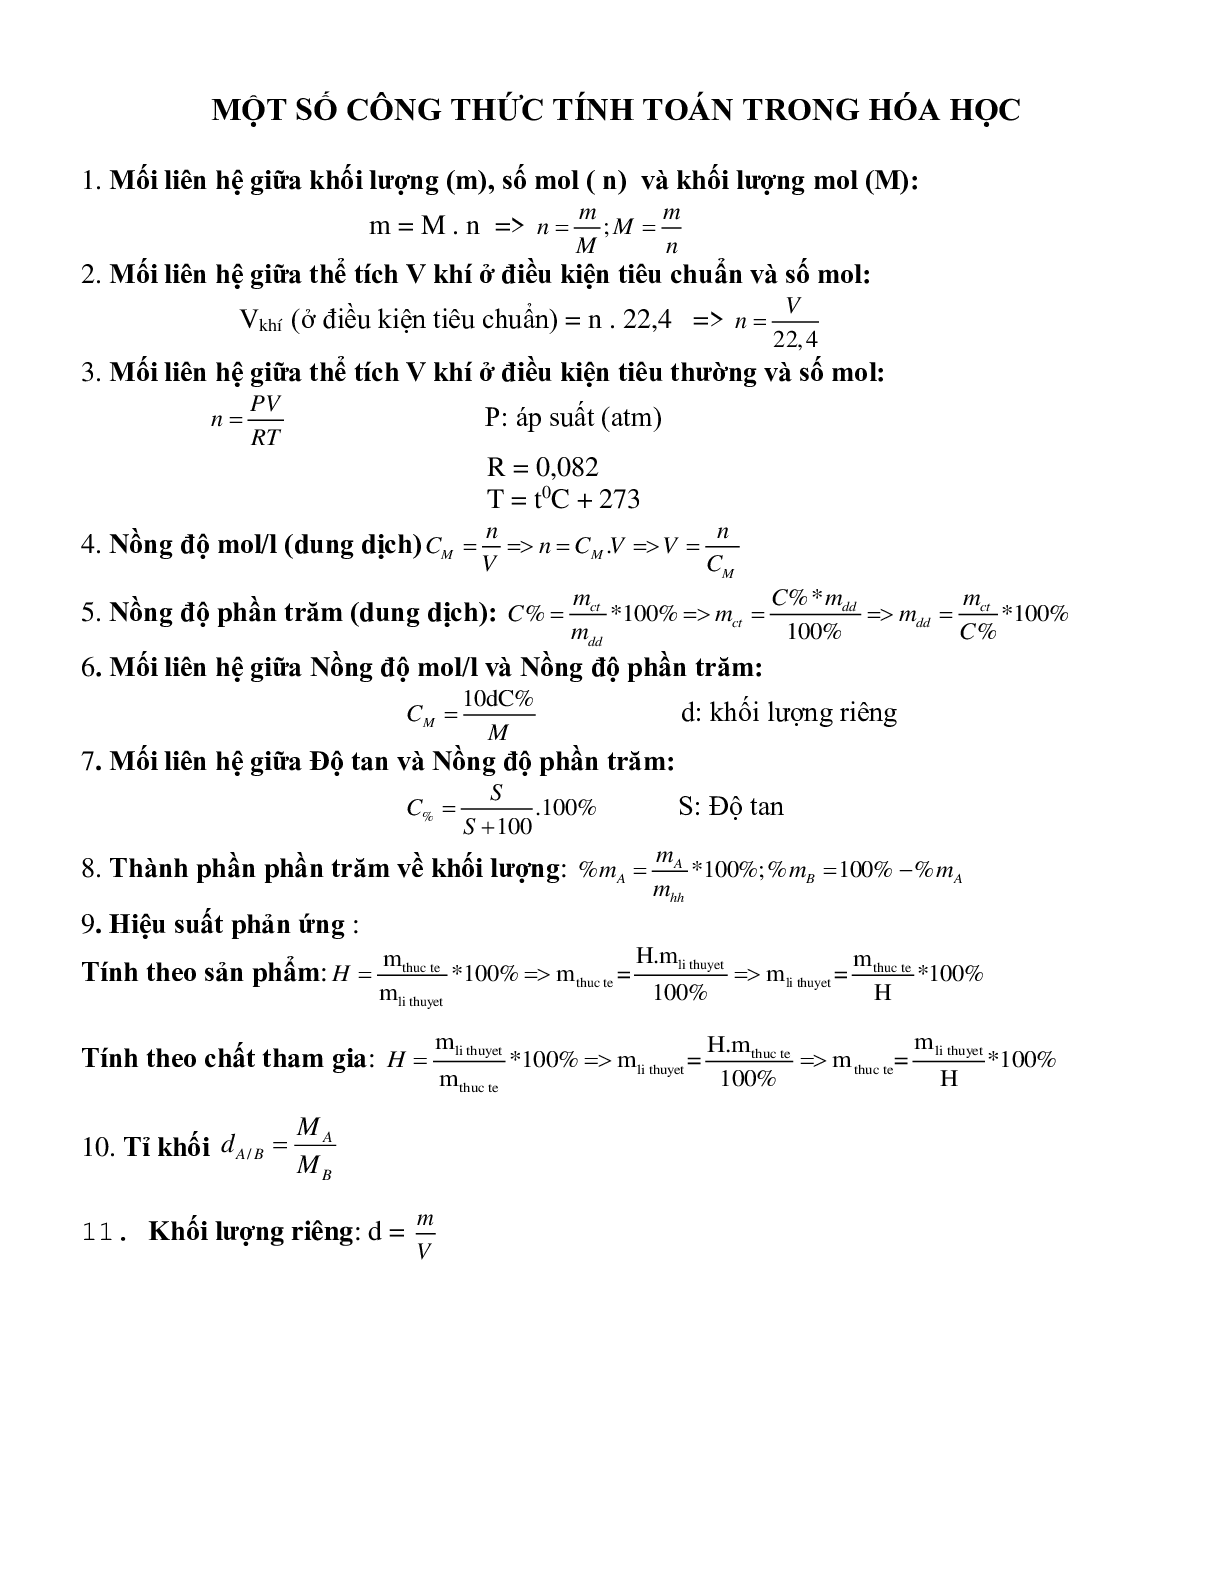 Các công thức hóa học hay dùng (trang 1)